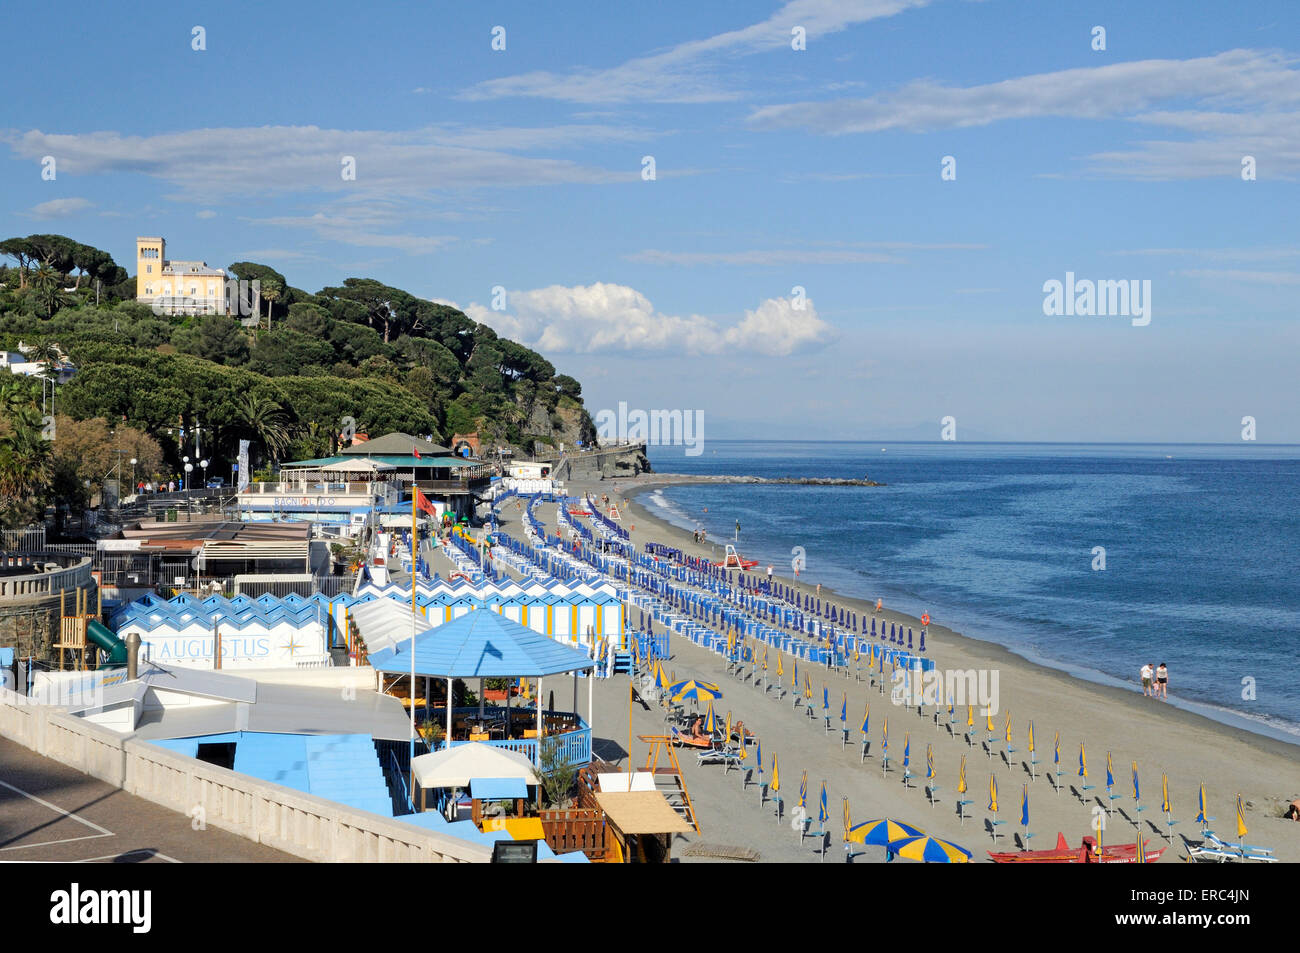 La playa de Celle Ligure, Italia Foto de stock